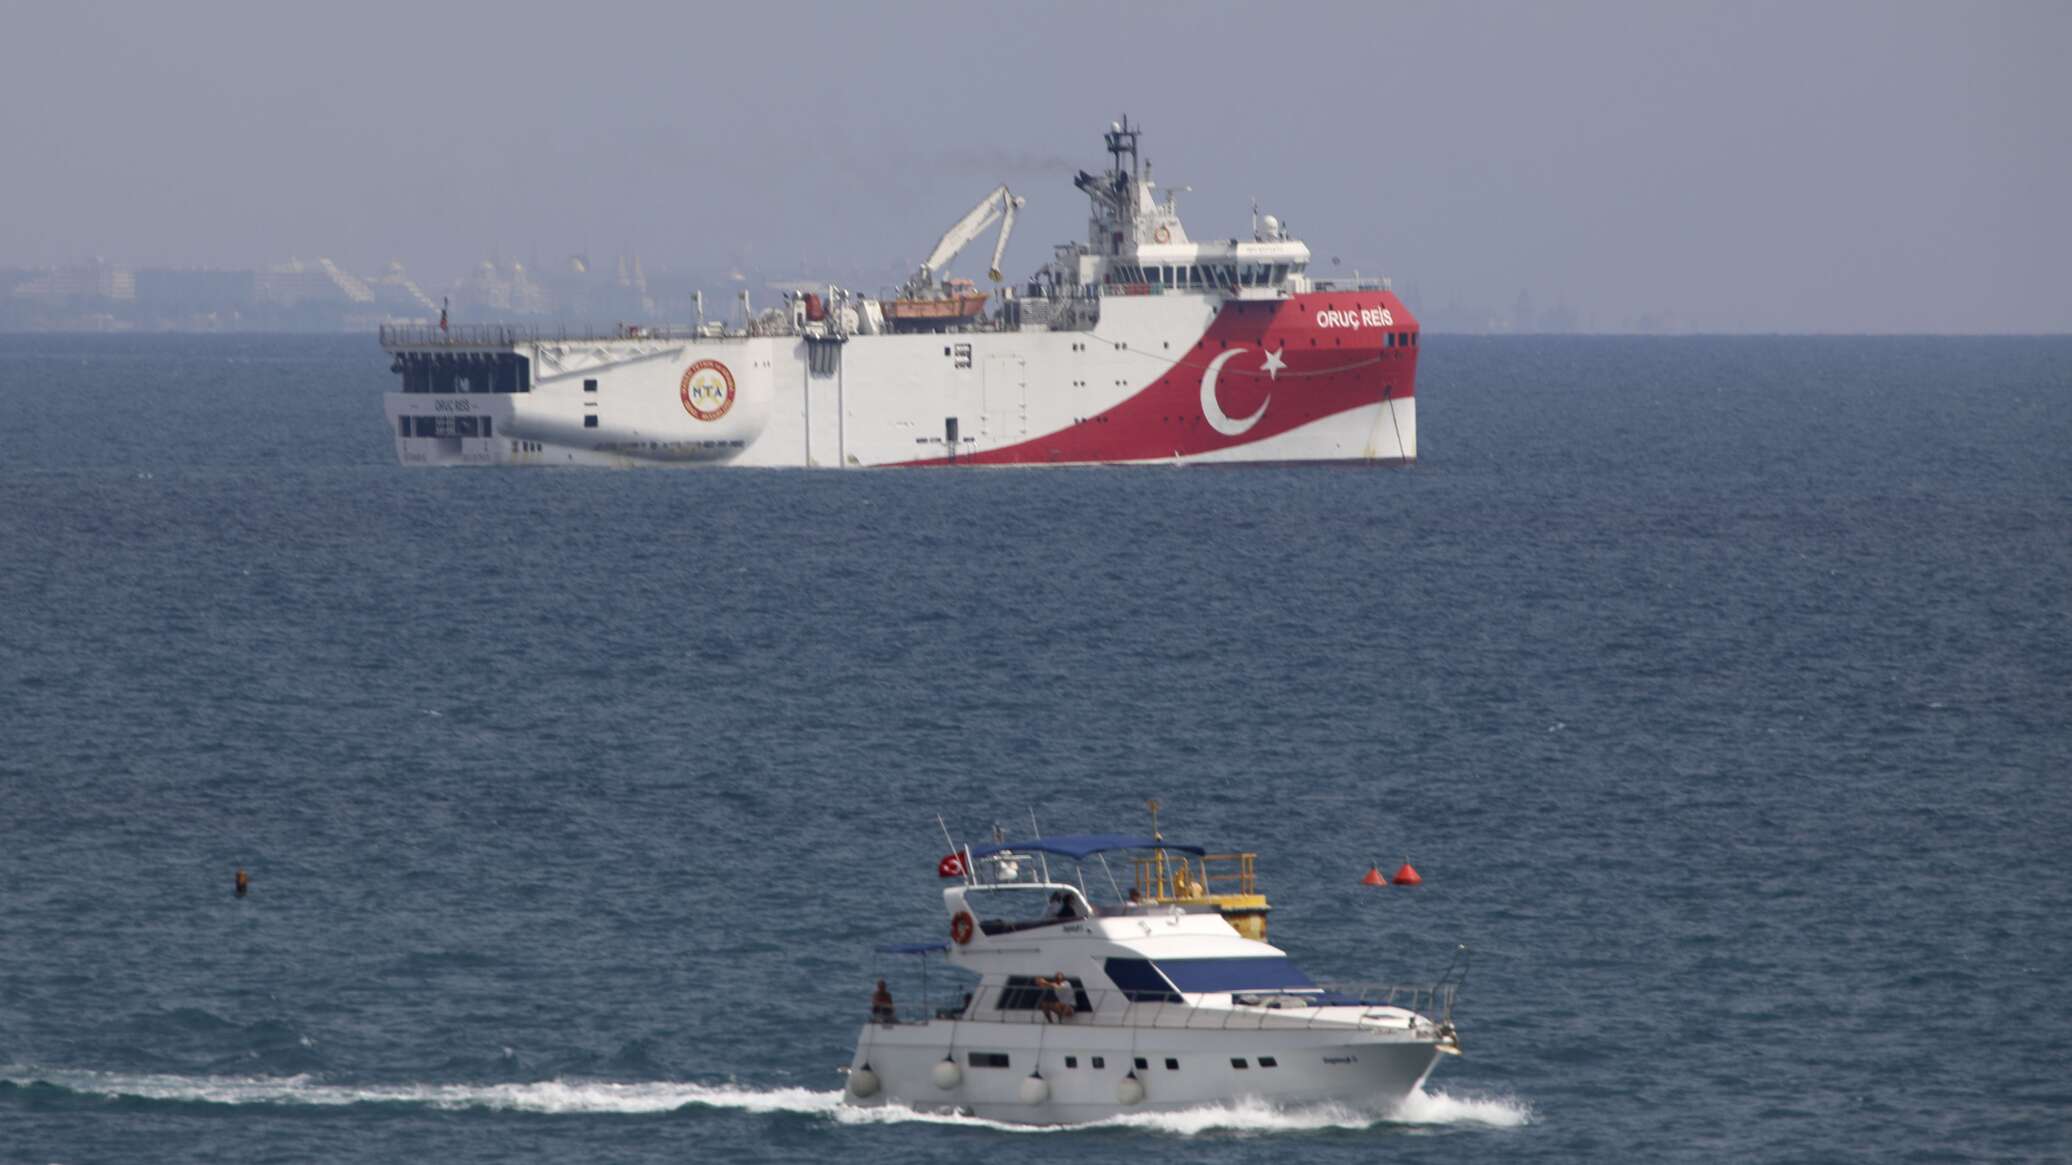 تقرير: تركيا تعتزم إرسال قوات بحرية إلى الصومال للتنقيب عن النفط والغاز